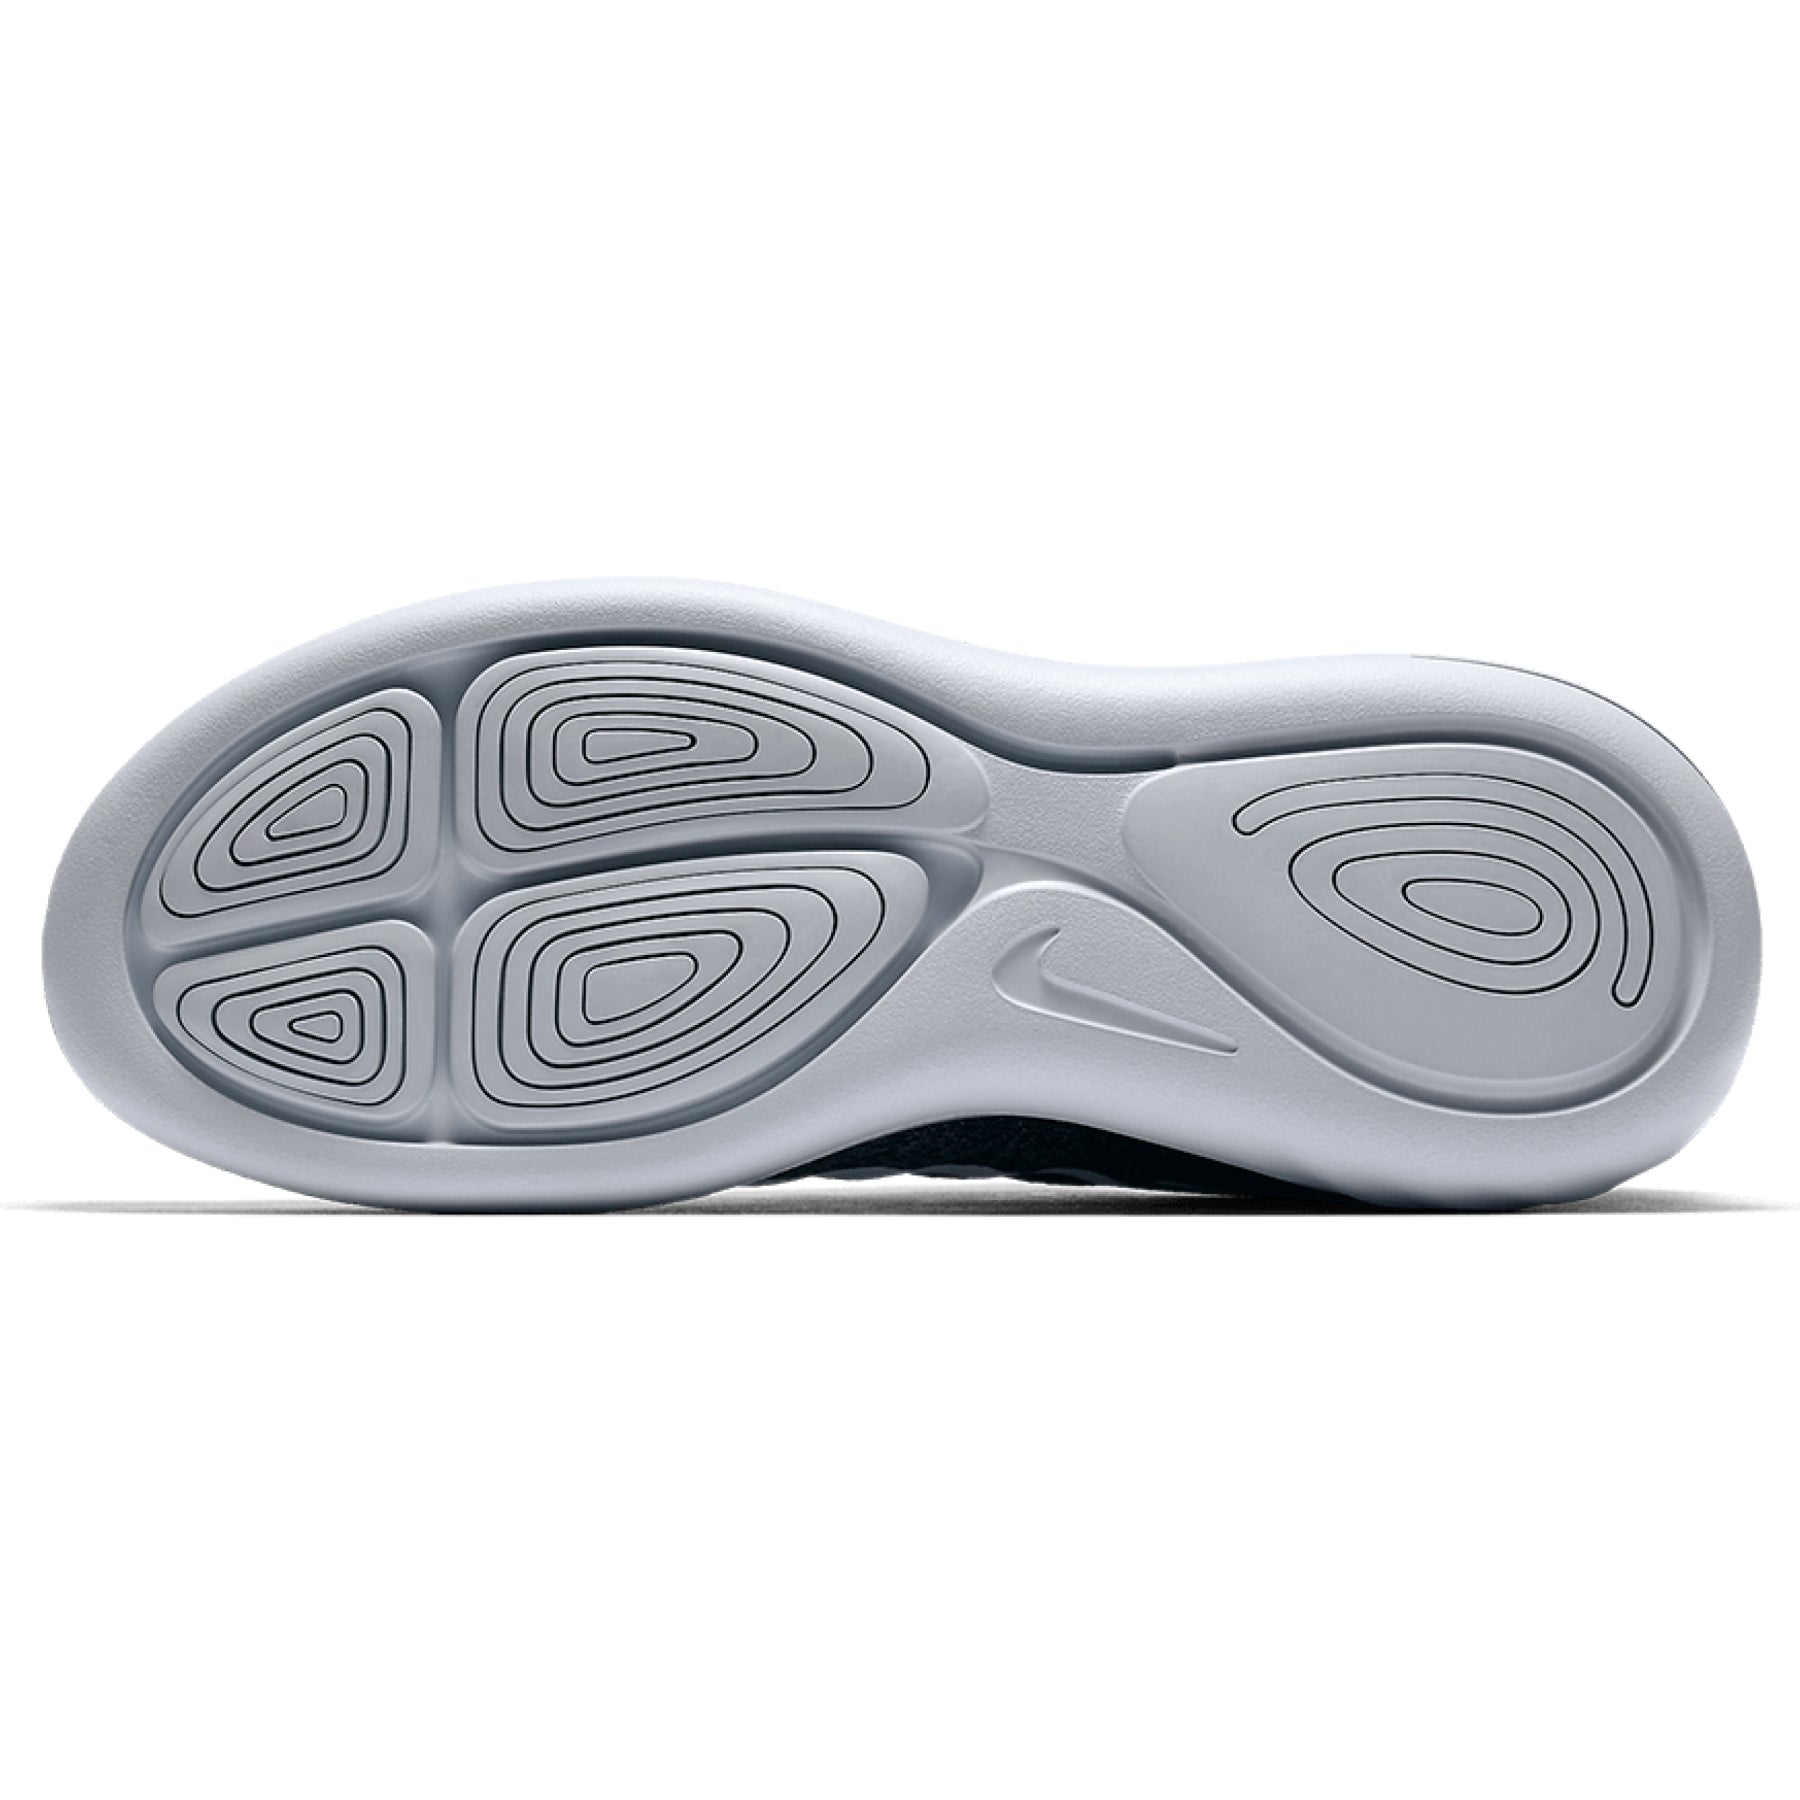 Zapatillas Nike Running Lunarglide 9 904716-001 – Boutique Boys